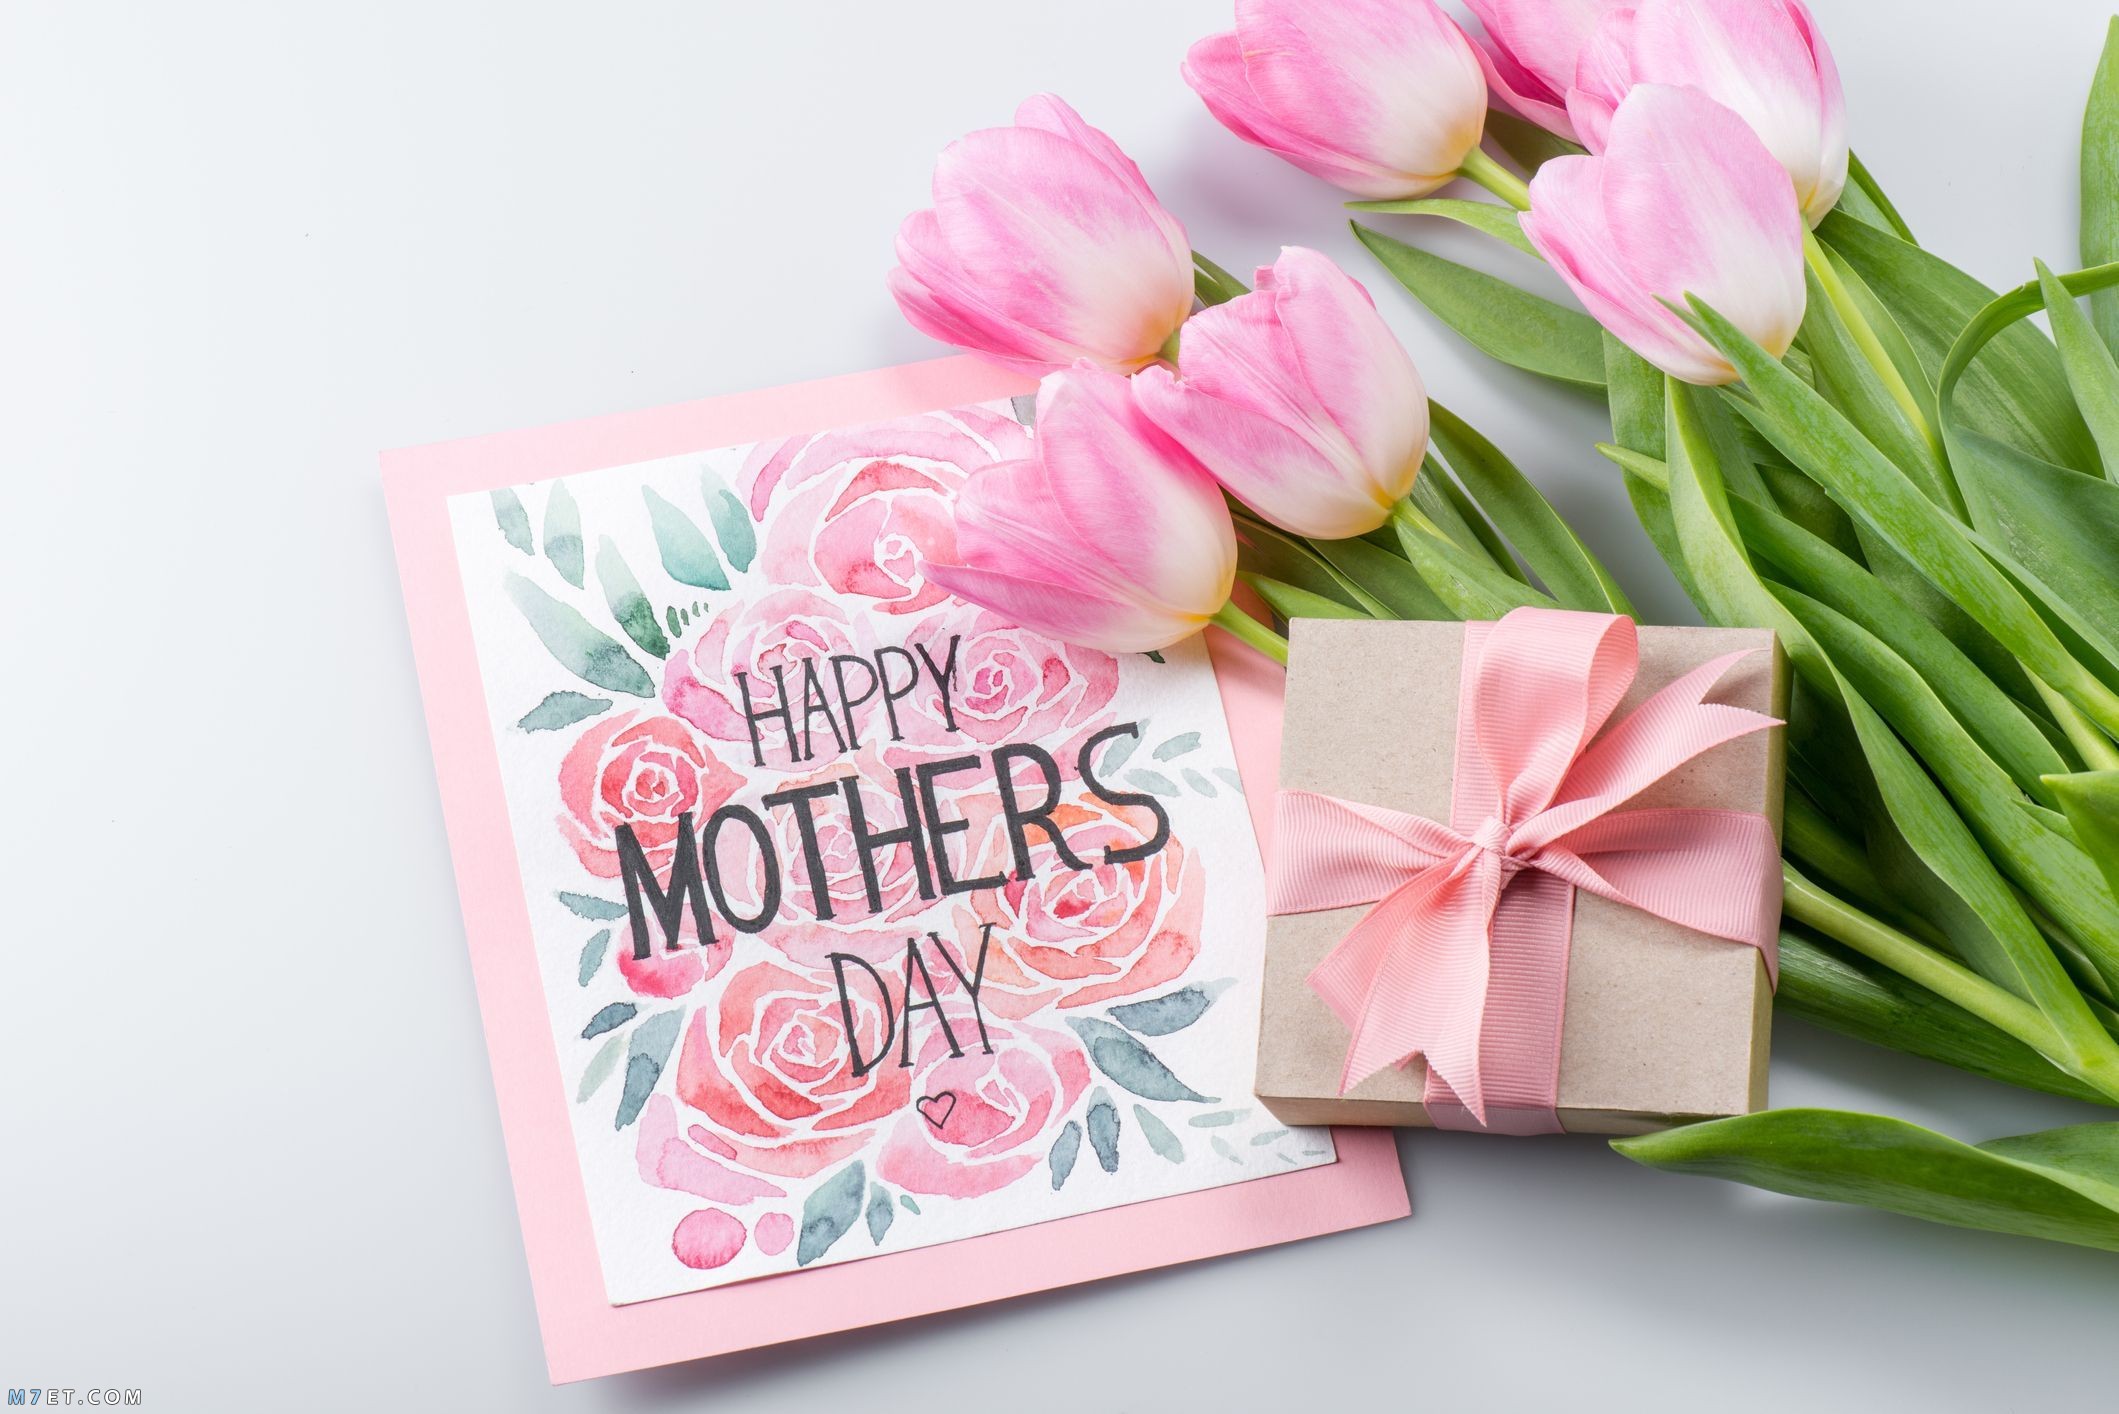 هدايا عيد الام 2021 افكار ومقترحات بالصور لاختيار اجمل هدية للأم